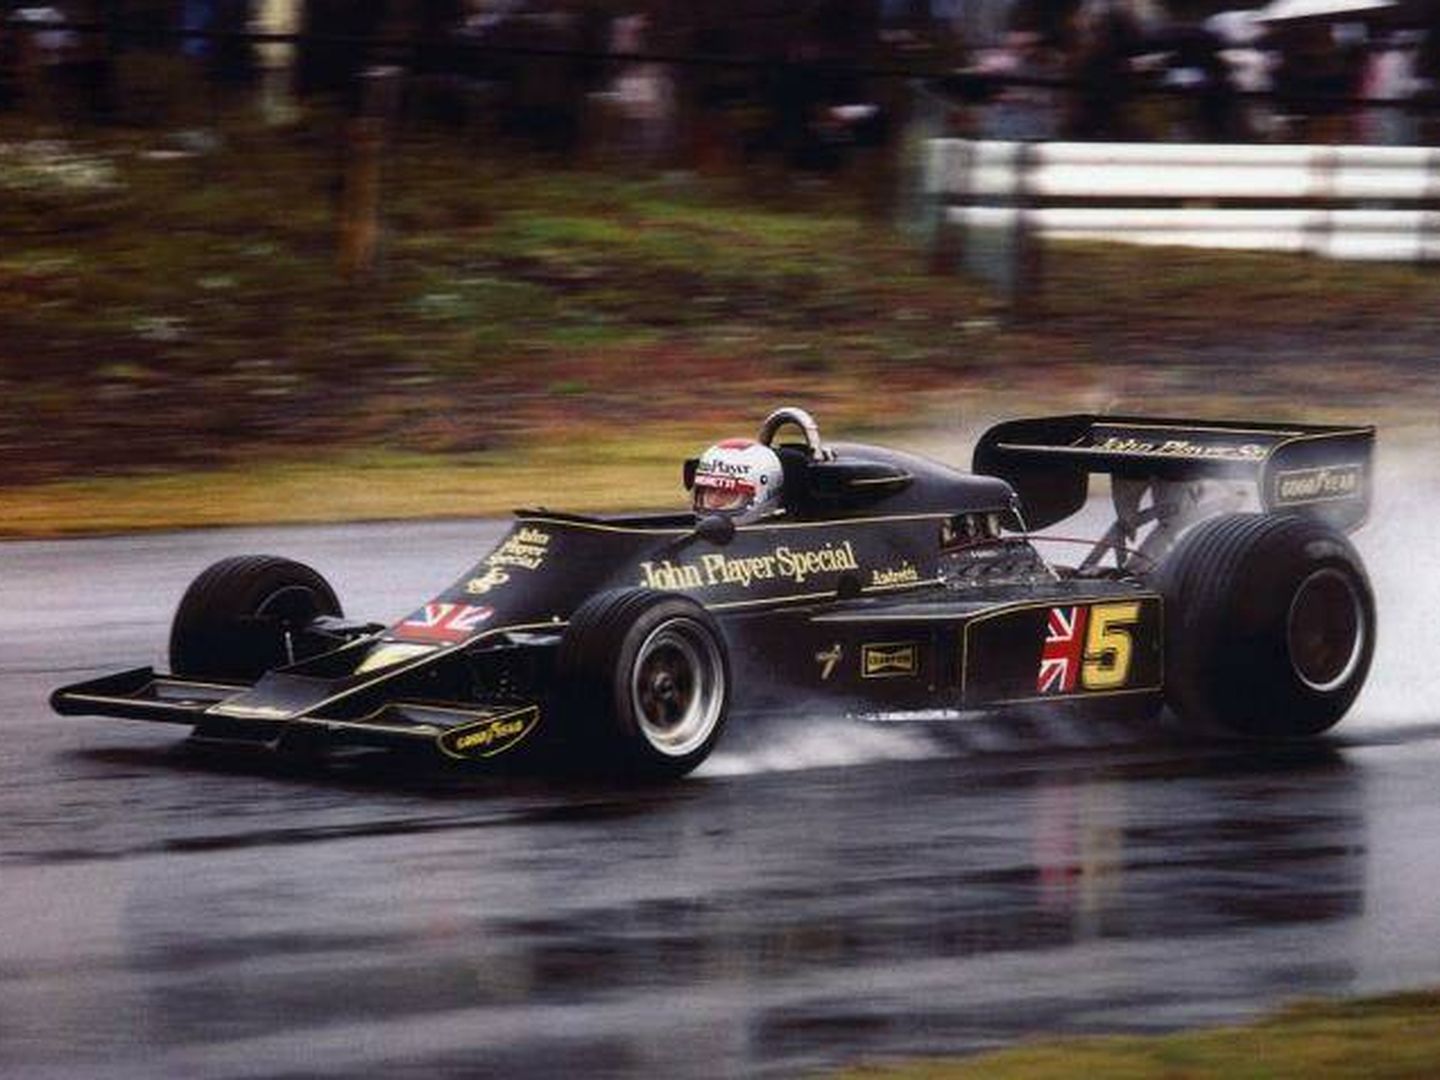 La configuración final del Lotus 77 distó mucho de la inicial. (Mario Andretti)